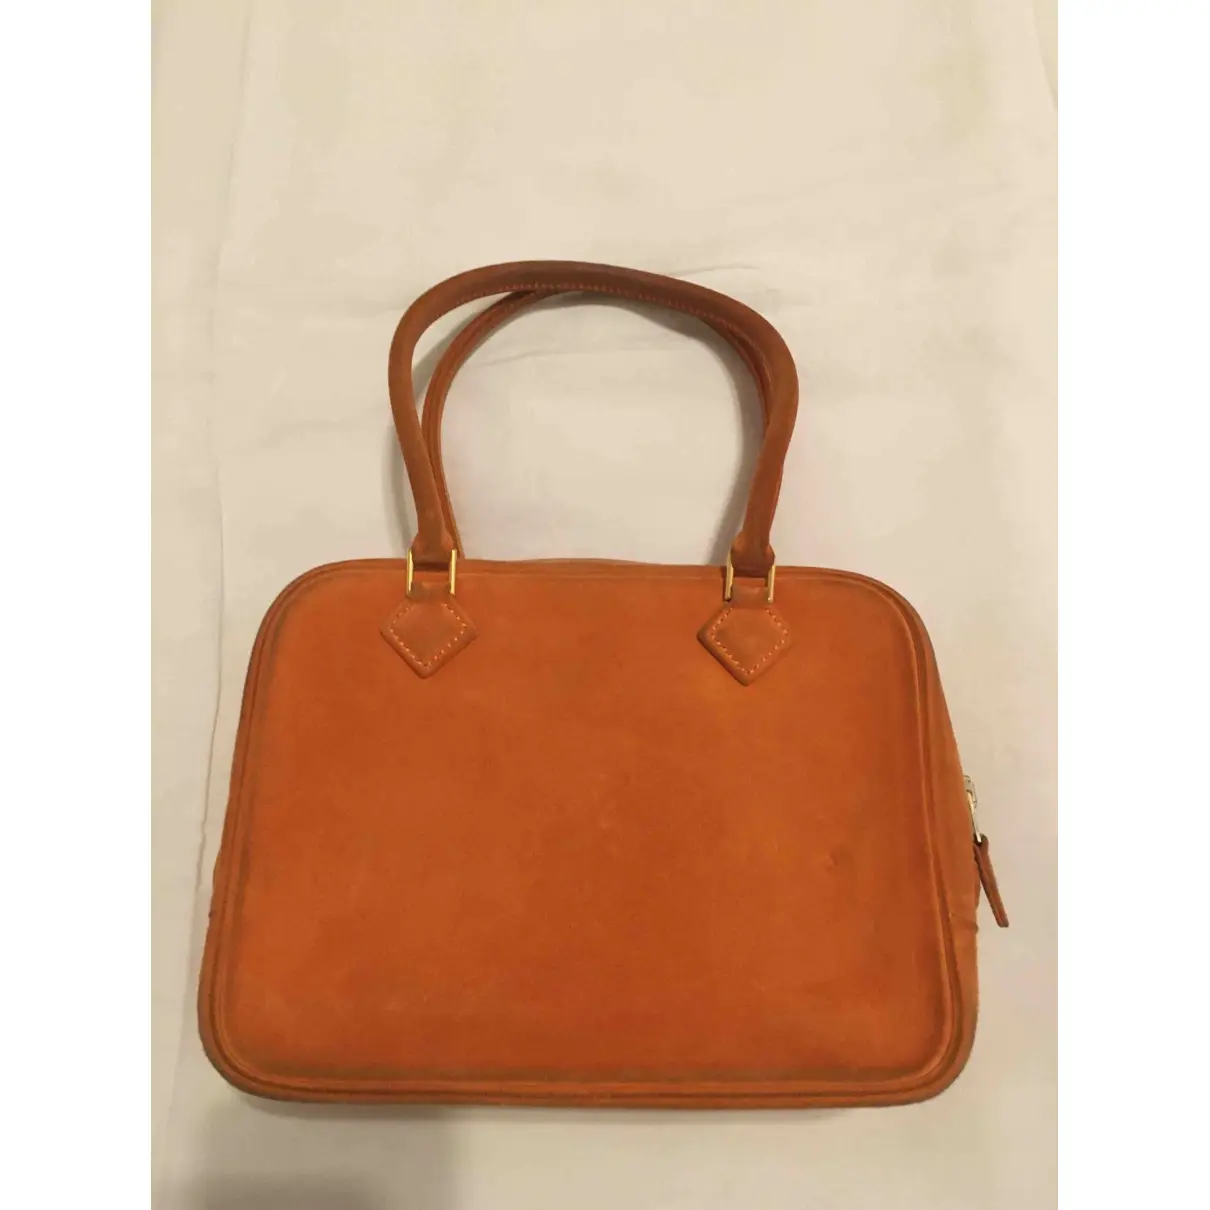 Buy Hermès Plume handbag online - Vintage